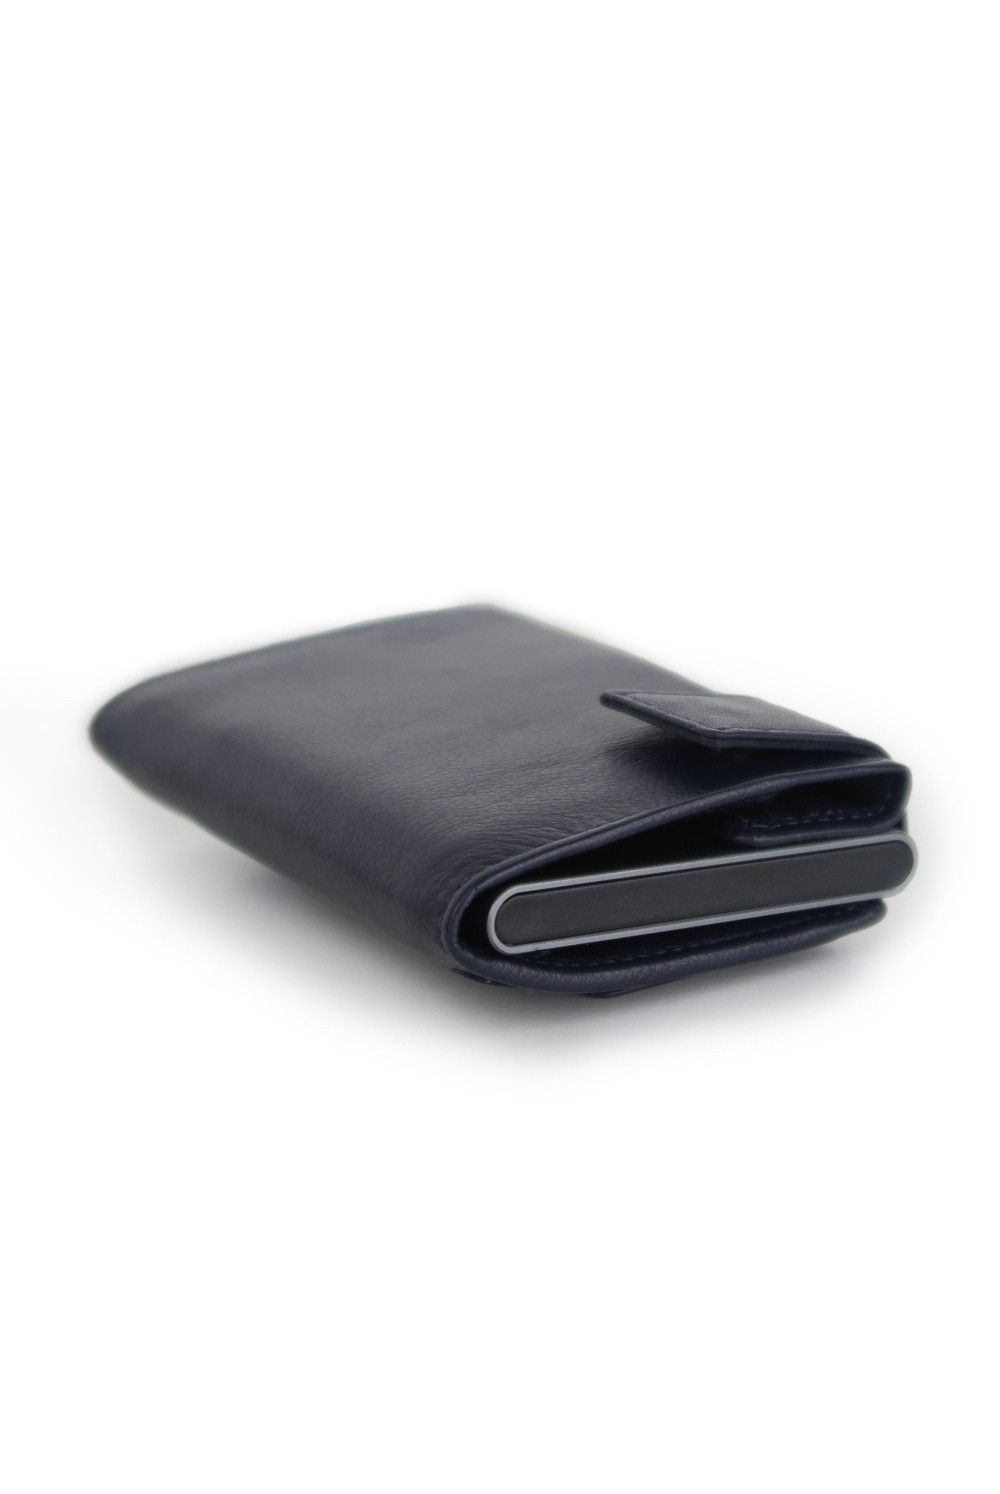 SecWal Card Case DK Leather dark grey